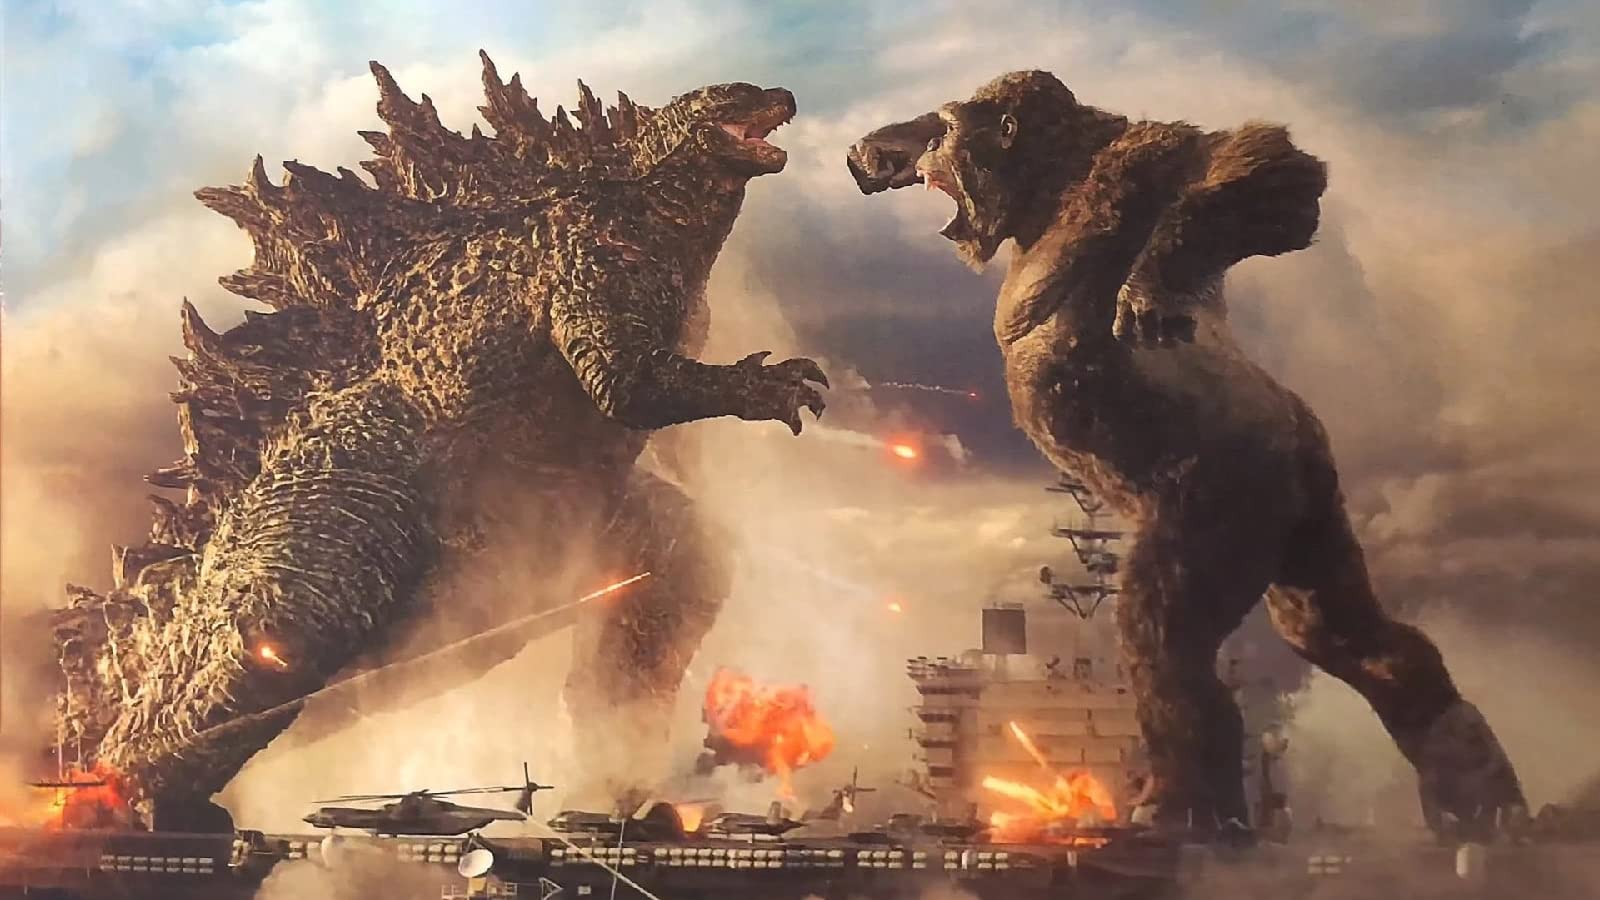 A still from Godzilla vs. Kong